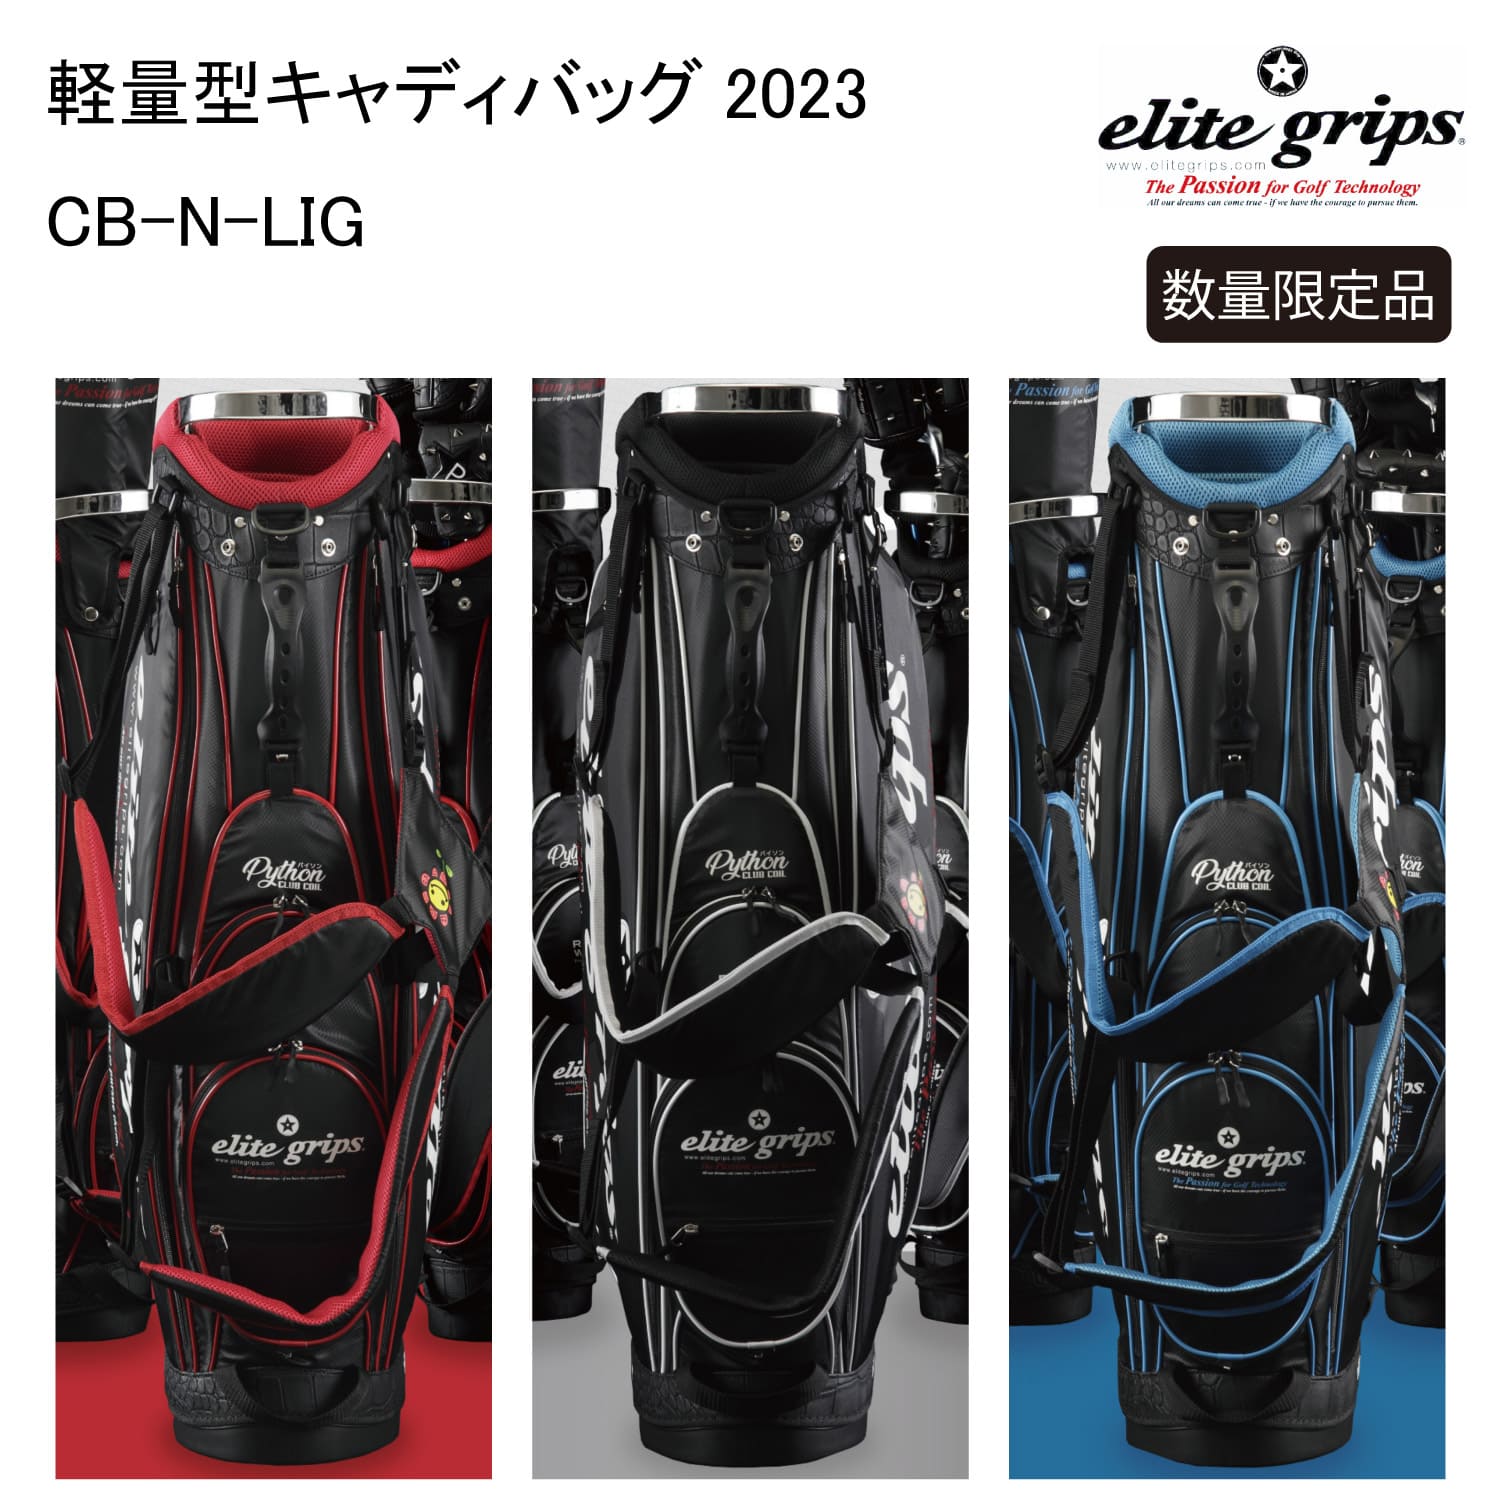 【ネーム入れ無料】キャディバッグ elite grips エリートグリップ 軽量 9.5型 限定 2023 ゴルフ キャディーバッグ ブラック